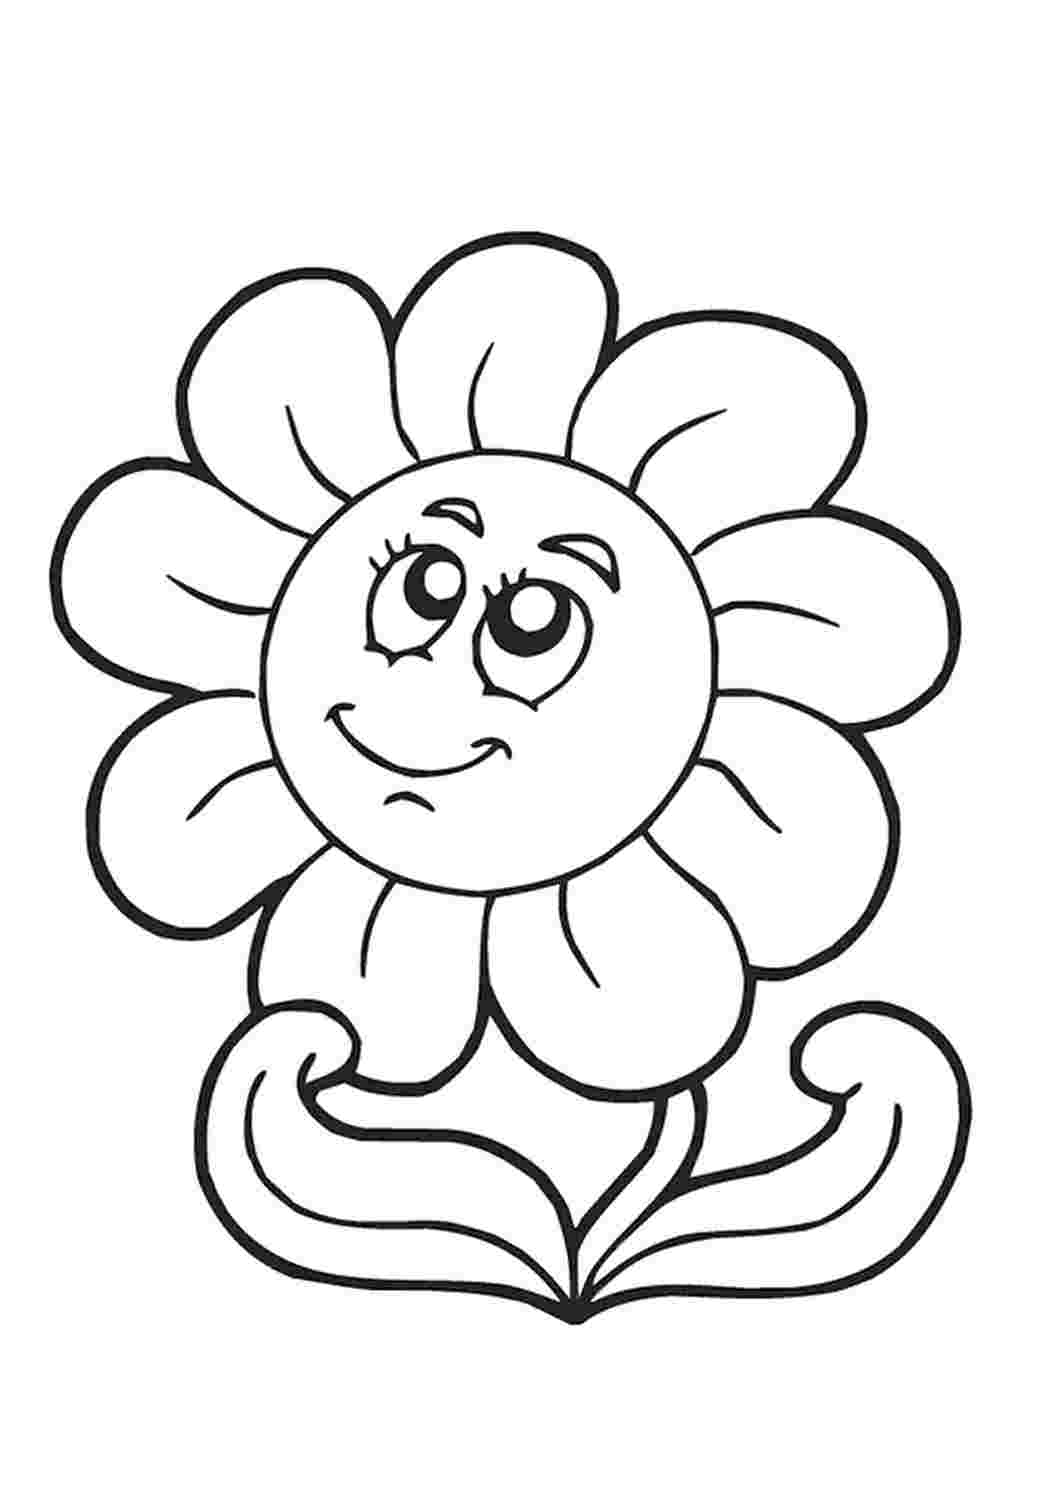 Рисунок раскраска цветочек для детей